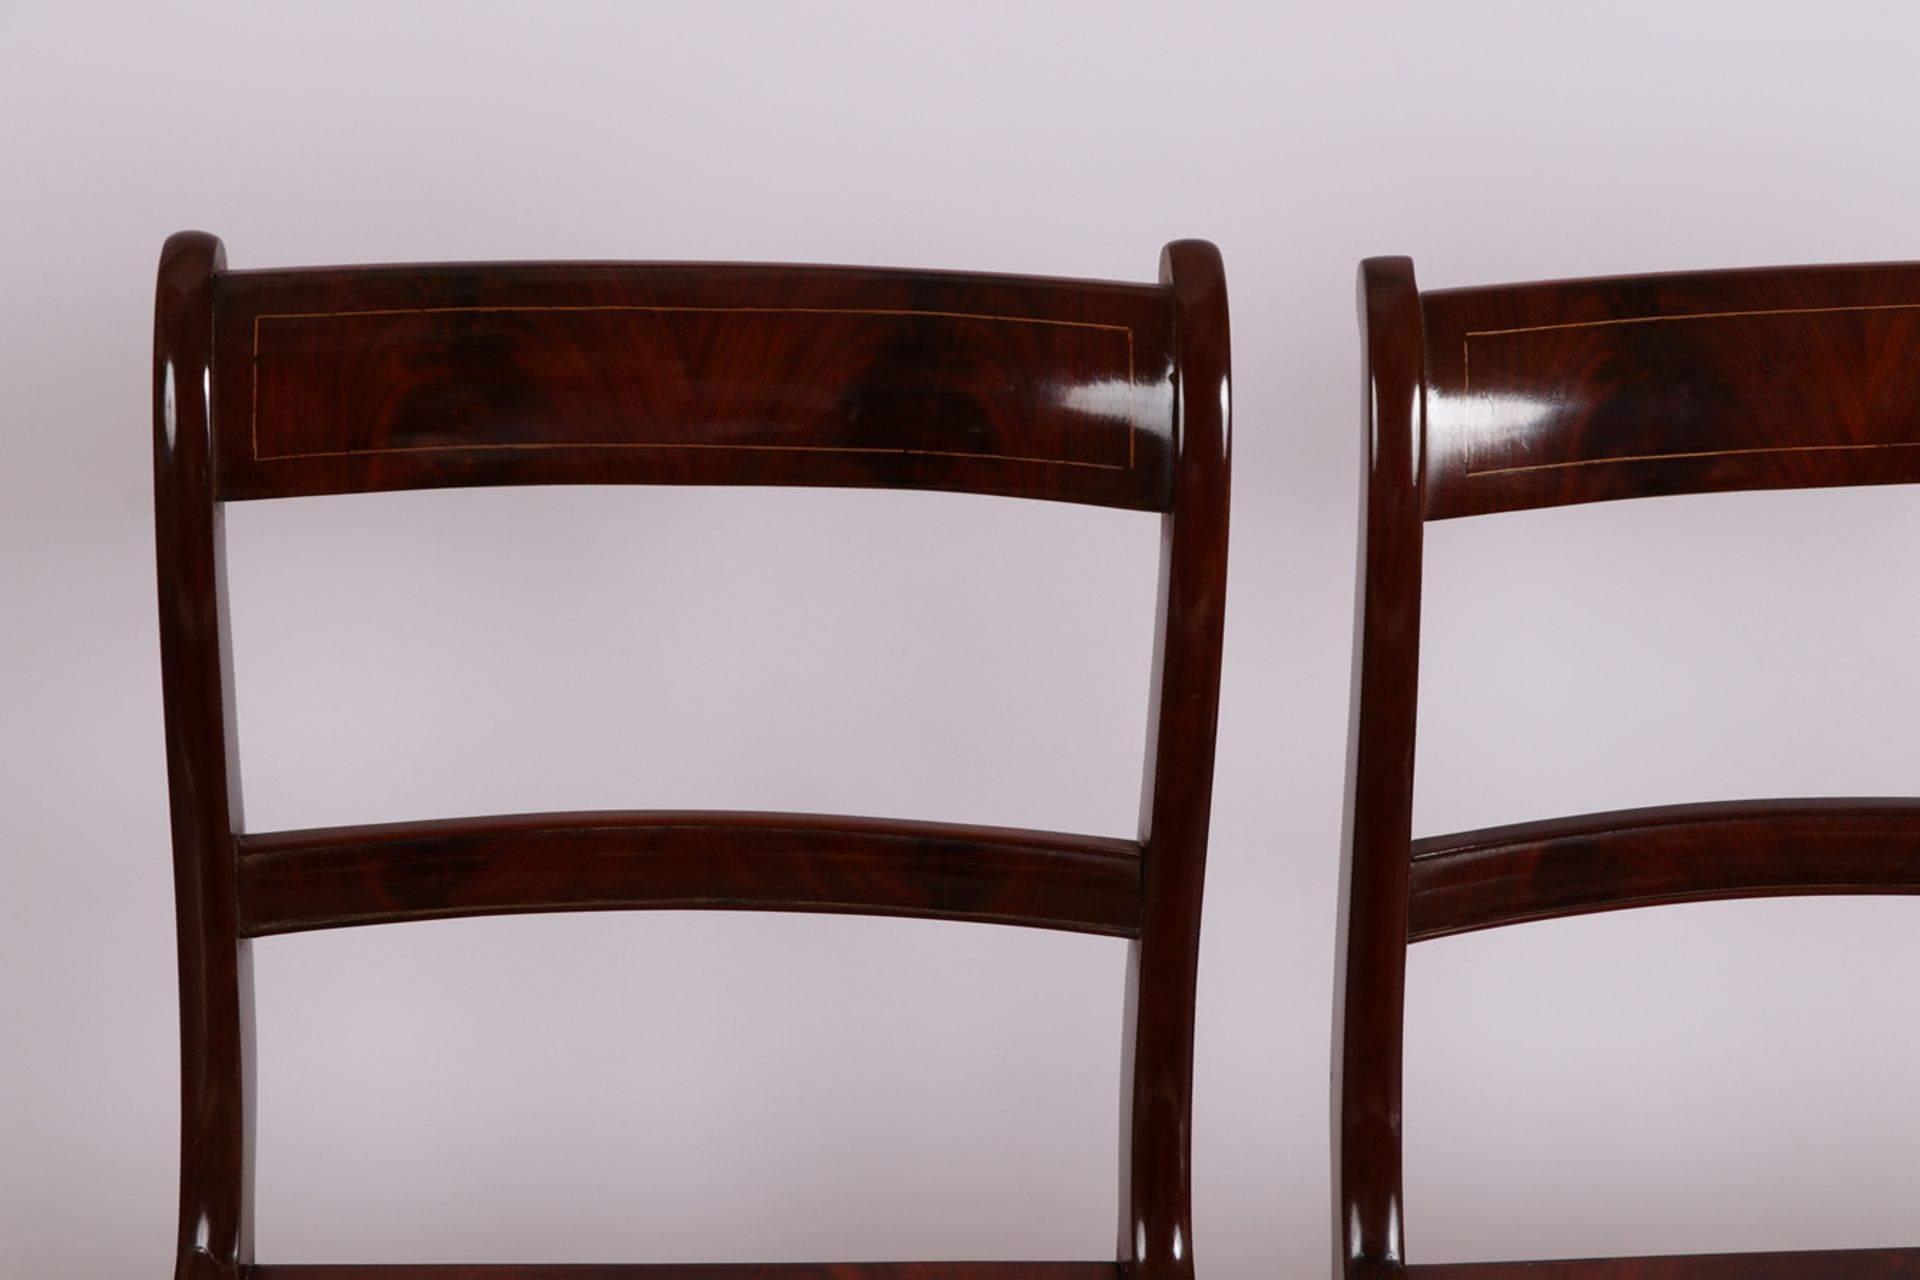 4 BiedermeierstühleMahagoni, Sitzfläche mit Rohrgeflecht, Rückenlehne mit Fadenintarsien. H.: 85 cm, - Bild 3 aus 3